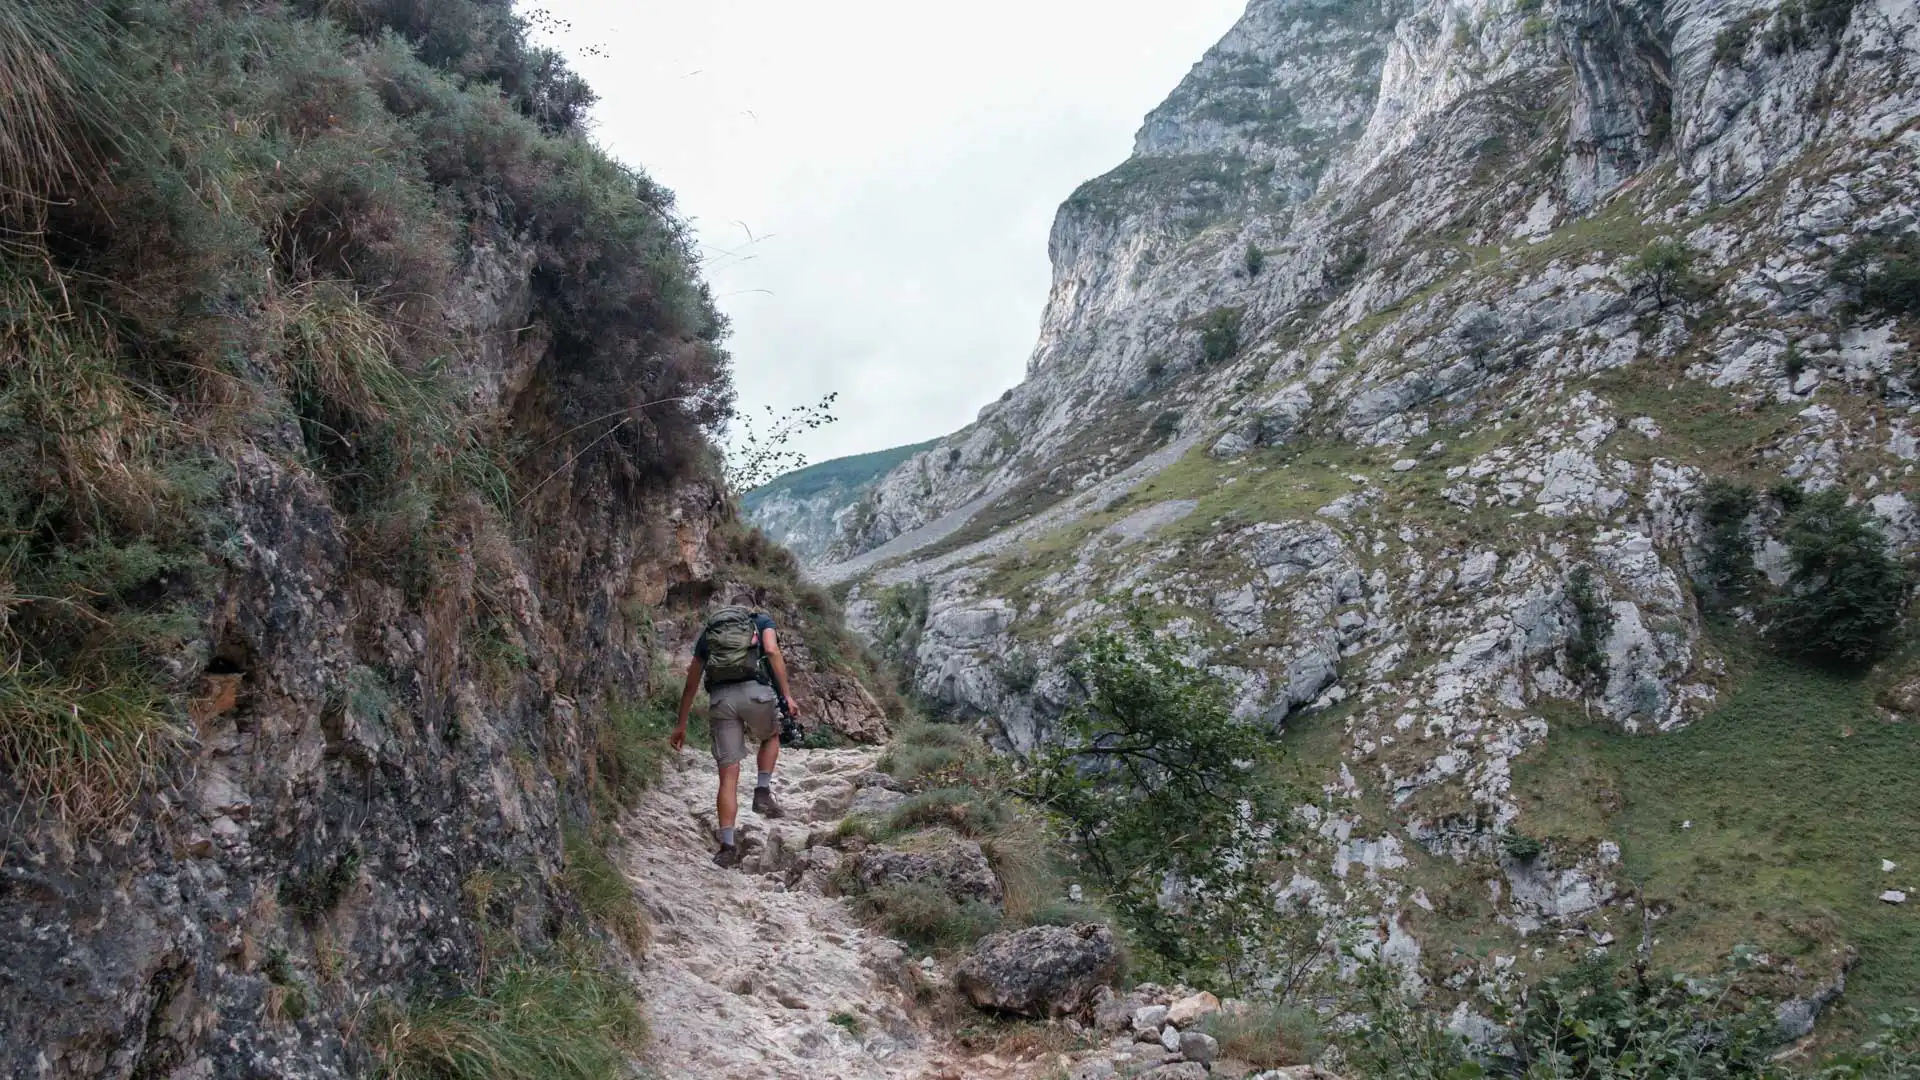 Randonneur sur un chemin en terre dans les Pics d'Europe, montagne en Espagne